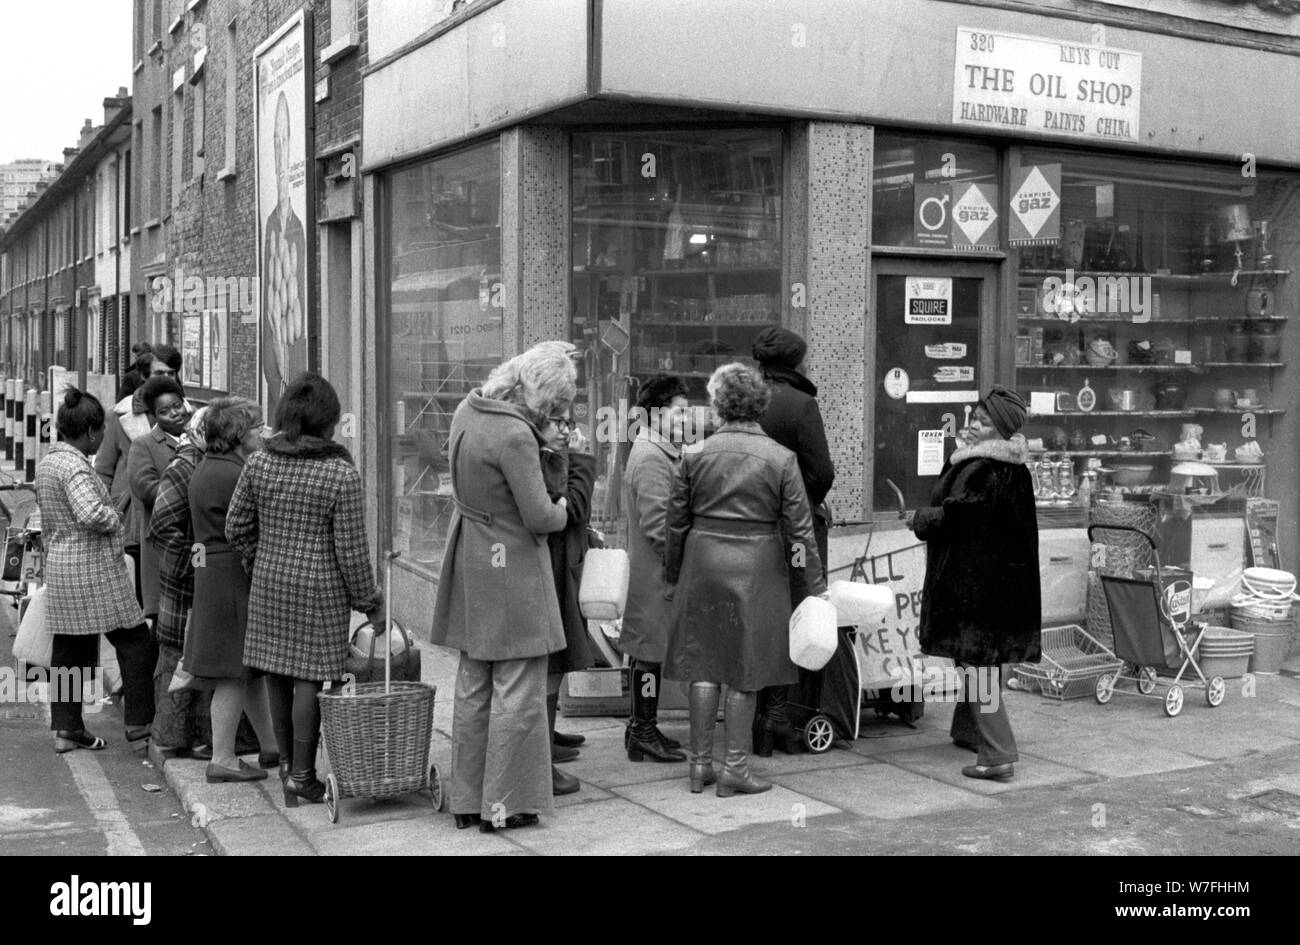 Escasez de combustible de 1970 REINO UNIDO. La gente haciendo cola para comprar aceite de parafina y de una tienda de la esquina de la tienda de aceite, así como para ser capaz de calentar sus hogares al sur de Londres. De diciembre de 1970, Inglaterra. HOMER SYKES Foto de stock